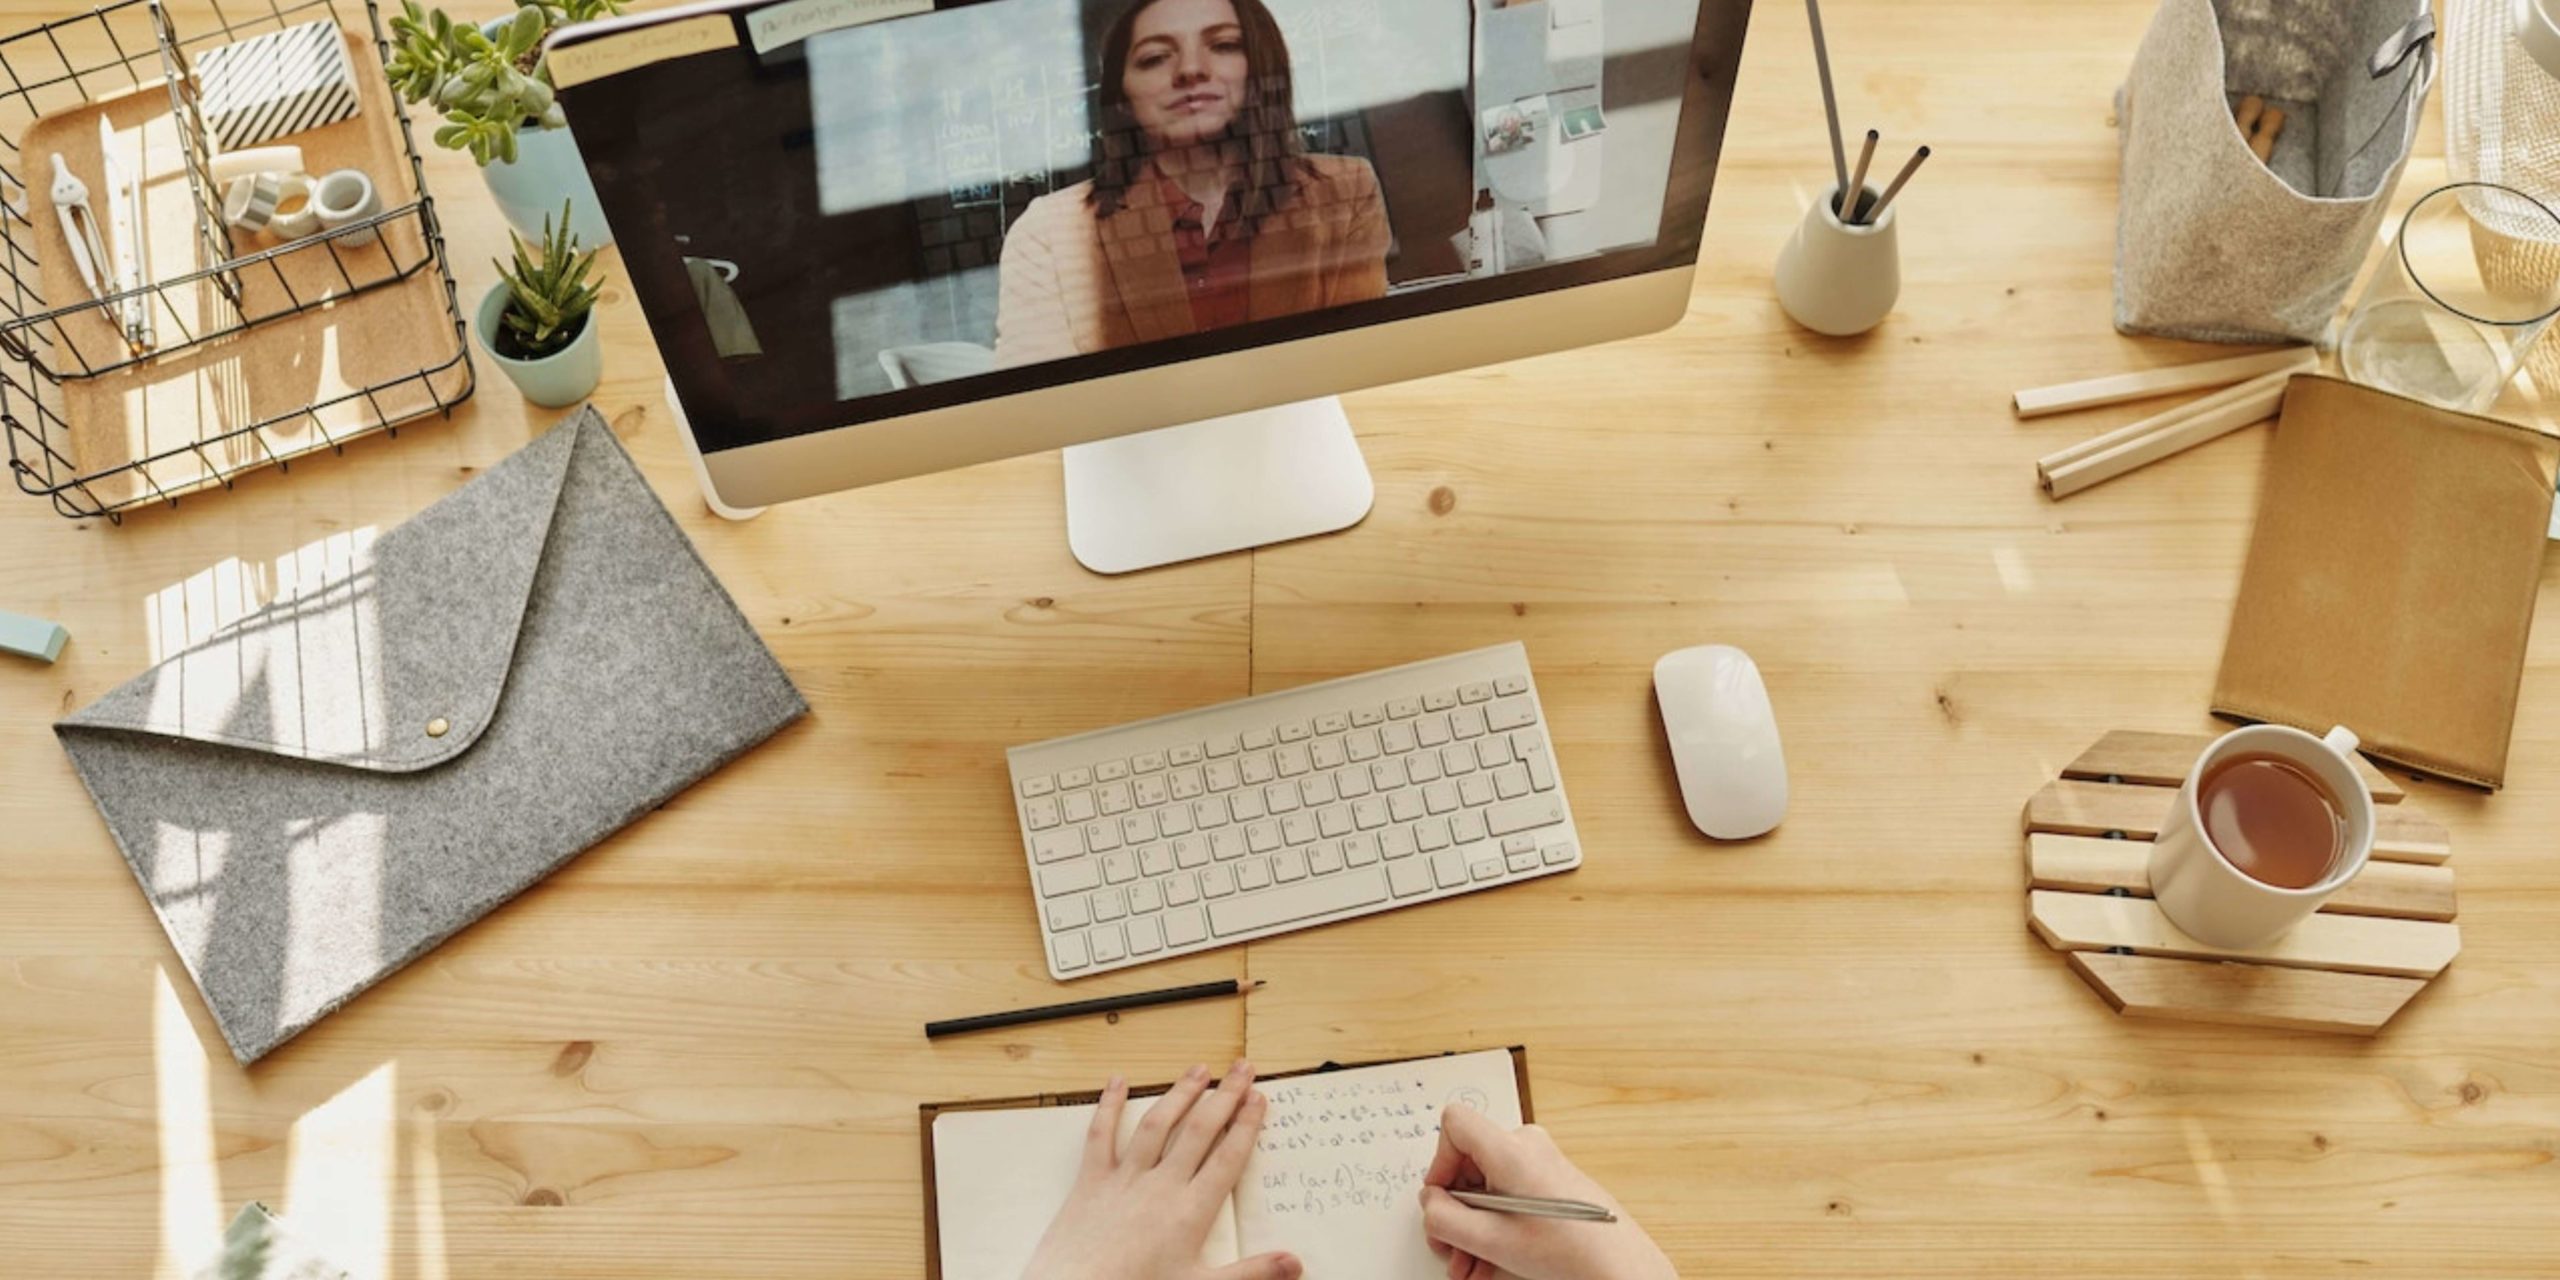 Bureau de travail avec une personne en appel vidéo sur son ordinateur